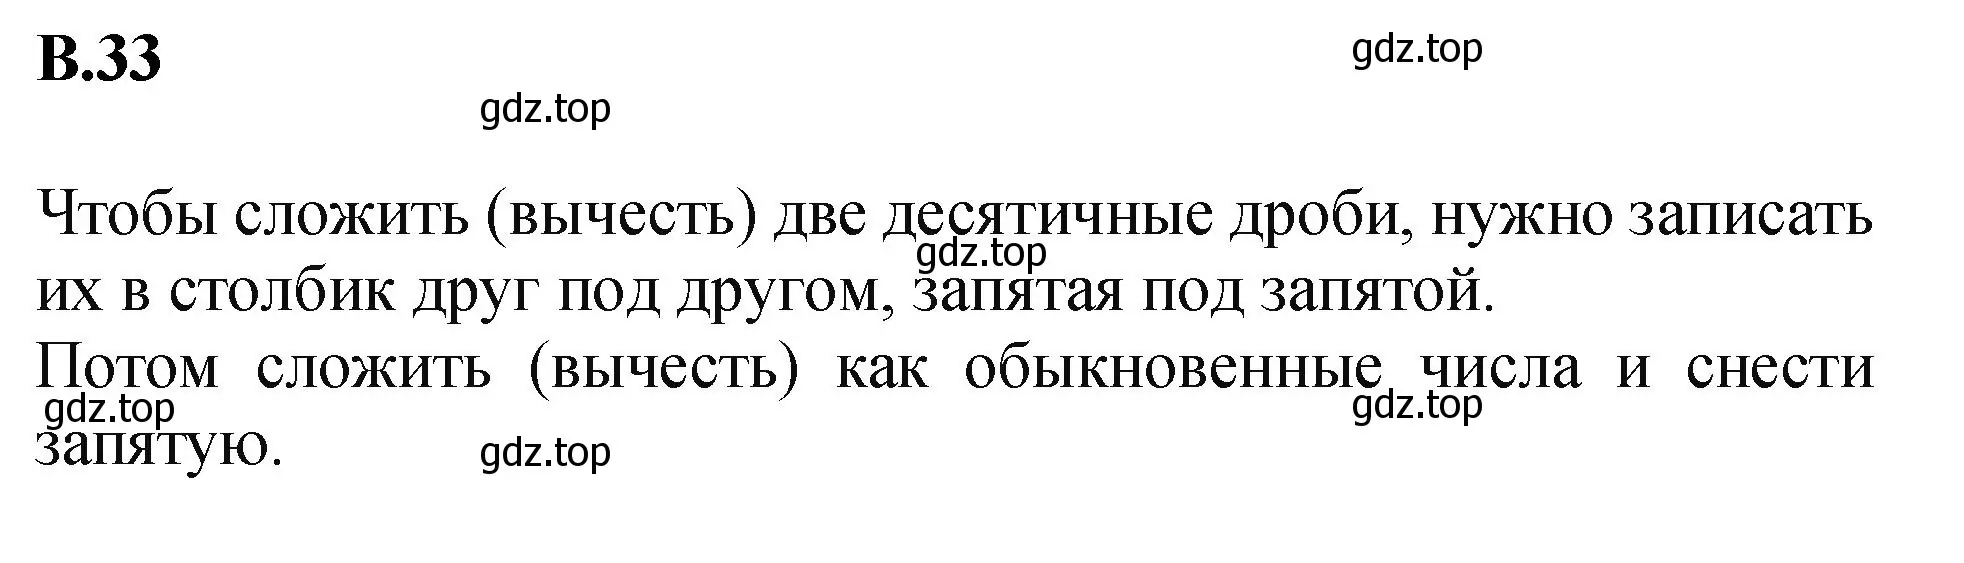 Решение номер 33 (страница 160) гдз по математике 5 класс Виленкин, Жохов, учебник 2 часть